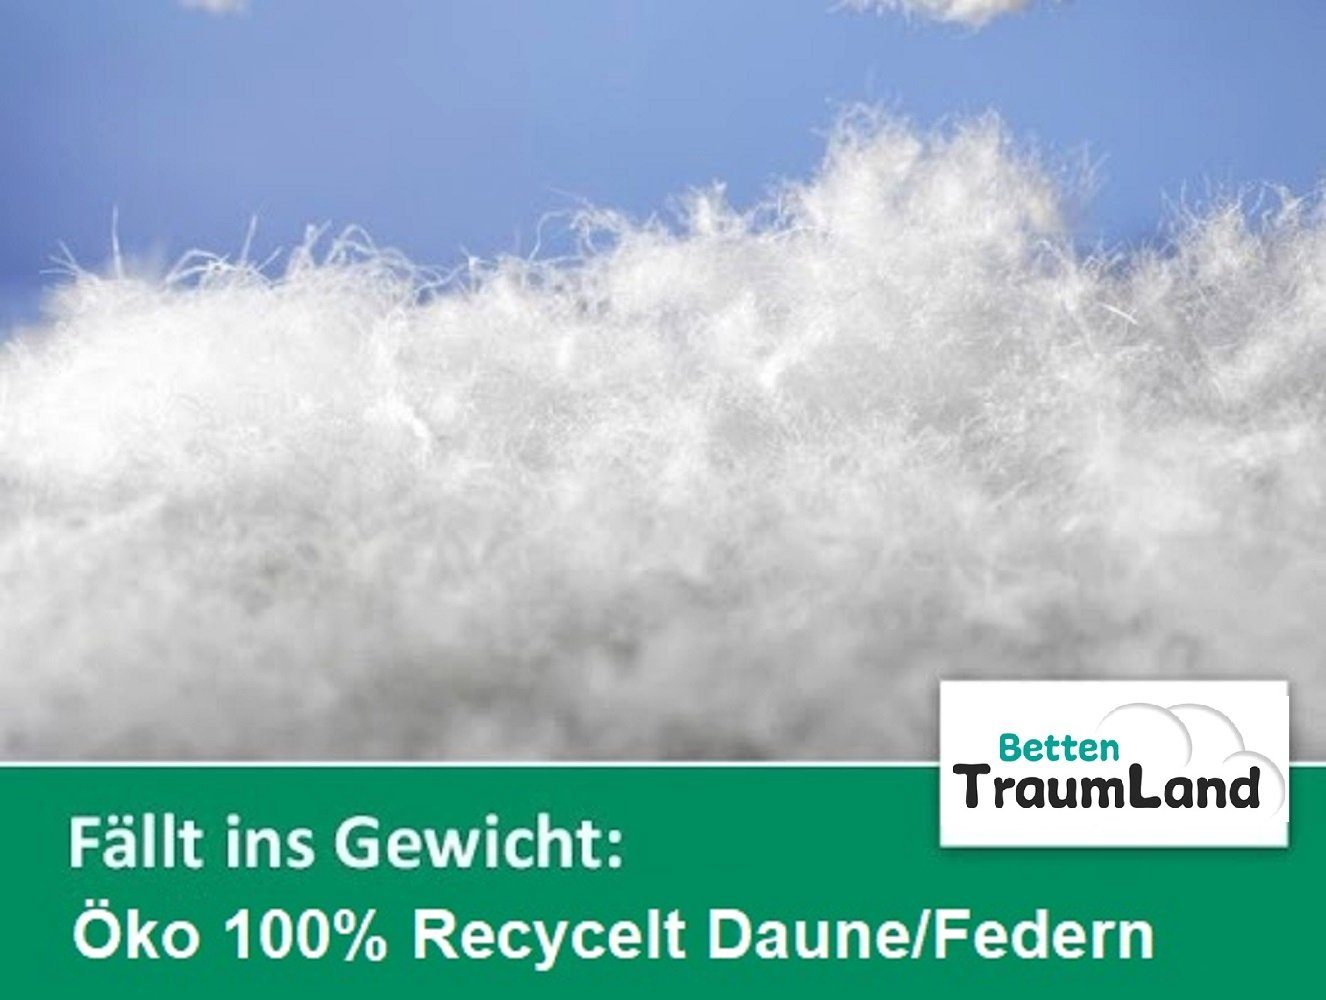 Daune in Füllung: klimaneutral Daune, Deutschland Daune recycelte Öko Traumland, Übergangsdecke nachhaltig ökologisch, hergestellt Betten Daunenbettdecke,